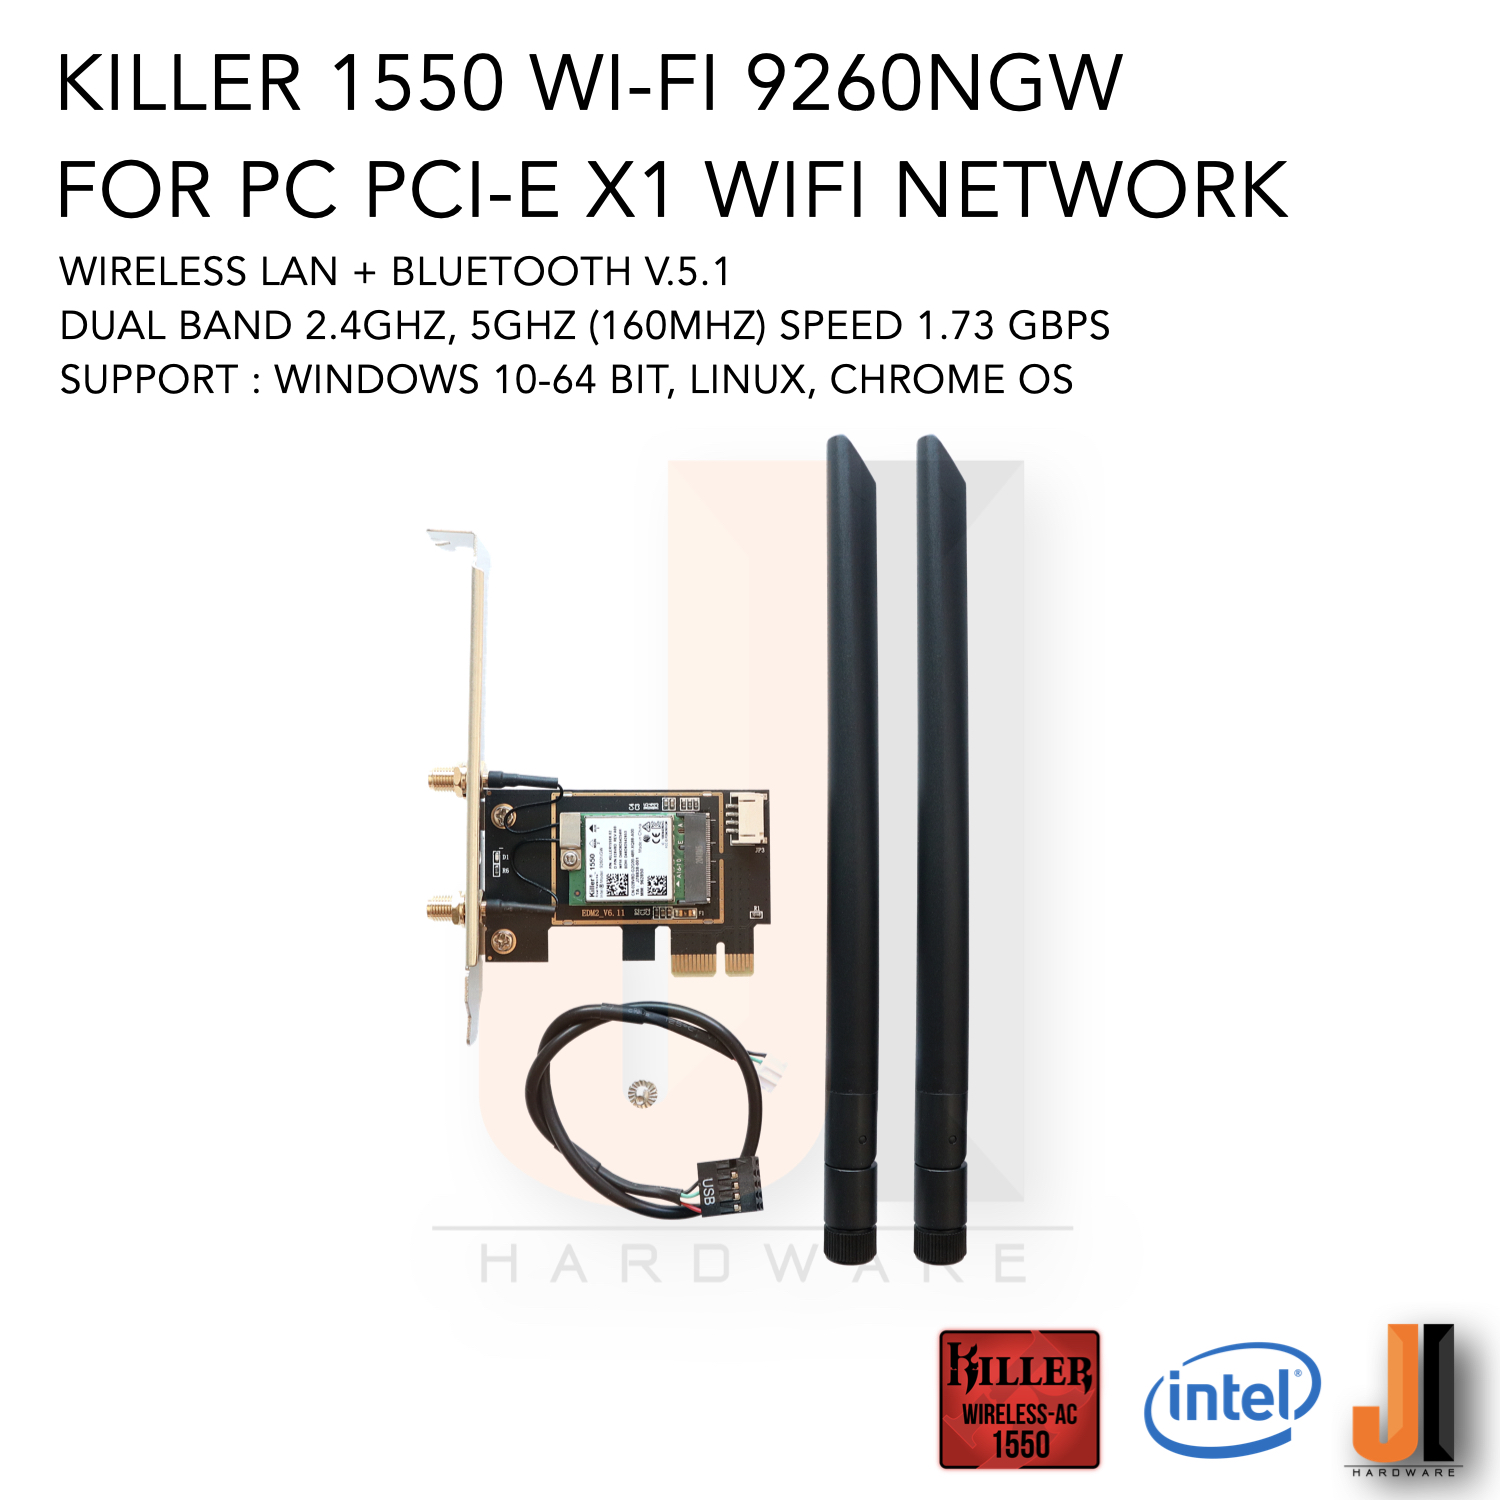 realtek rtl8188ce wireless lan 802.11n pci-e nic ghz